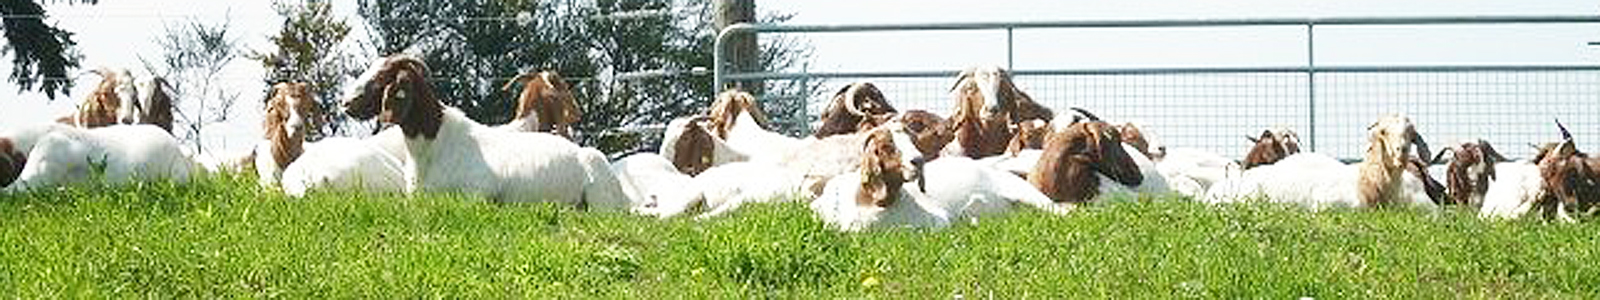 Ziegen liegen auf einer Weide ©DLR